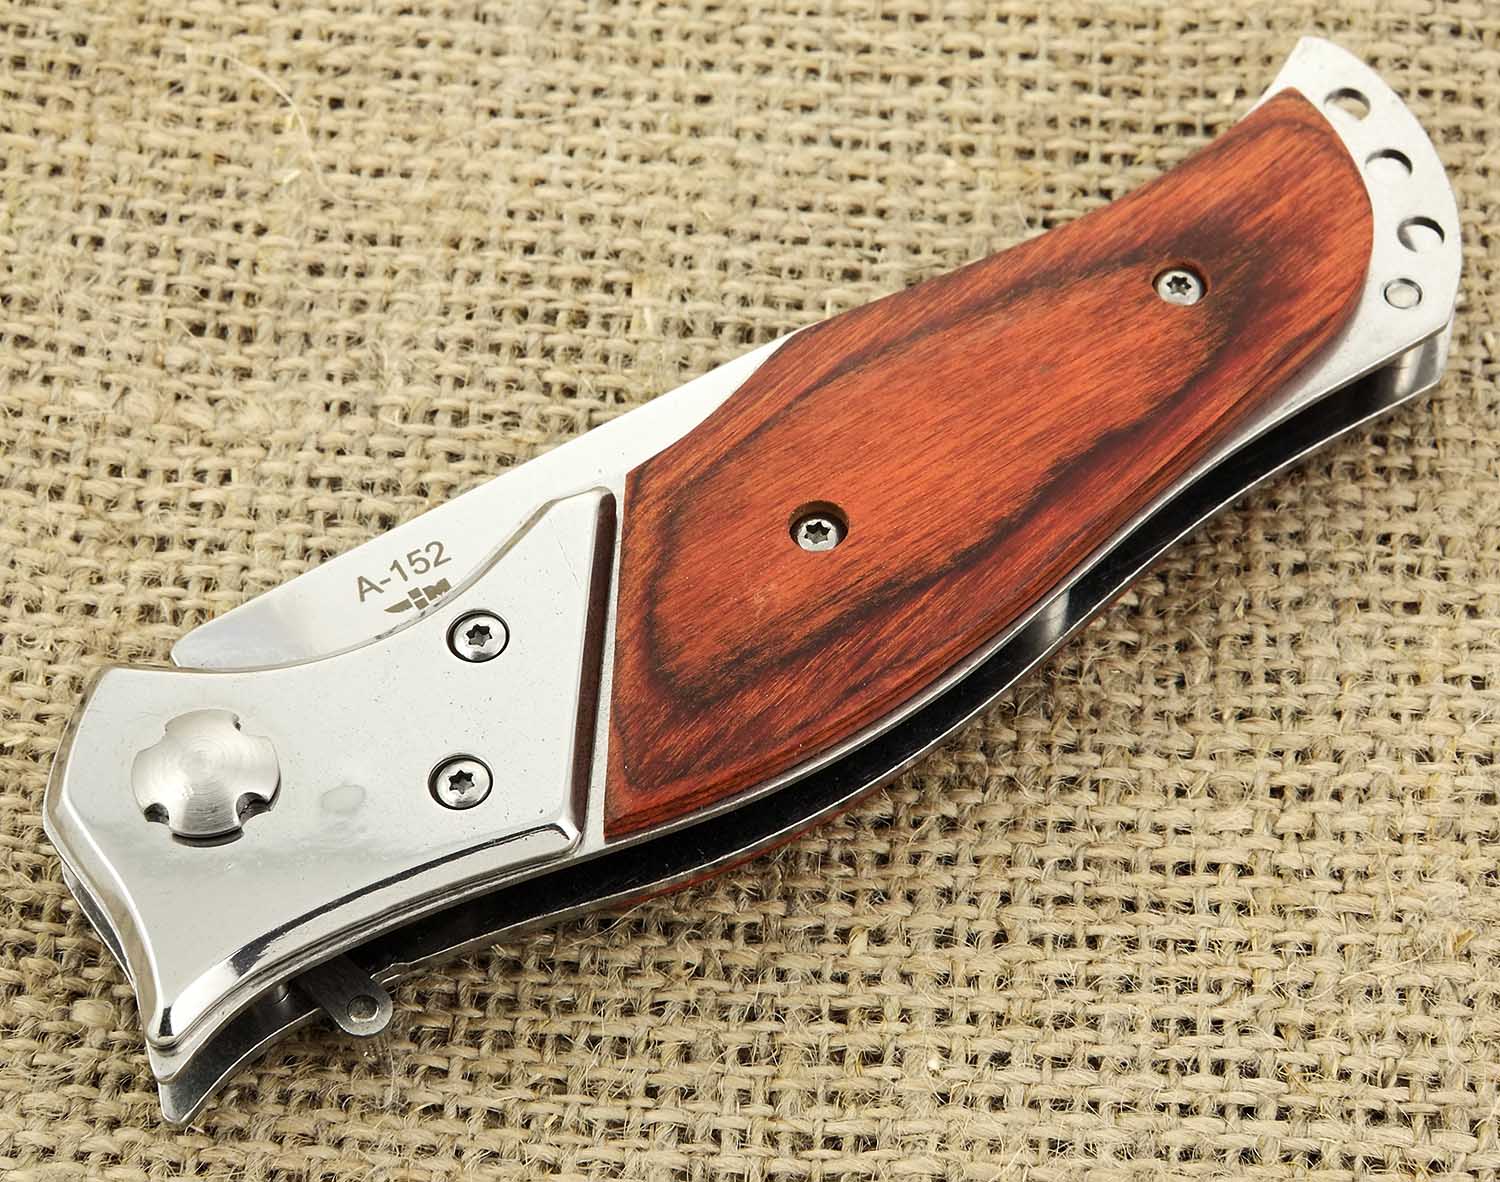 Нож автоматический выкидной с деревянной рукоятью Ножемир Омуль A-152 .